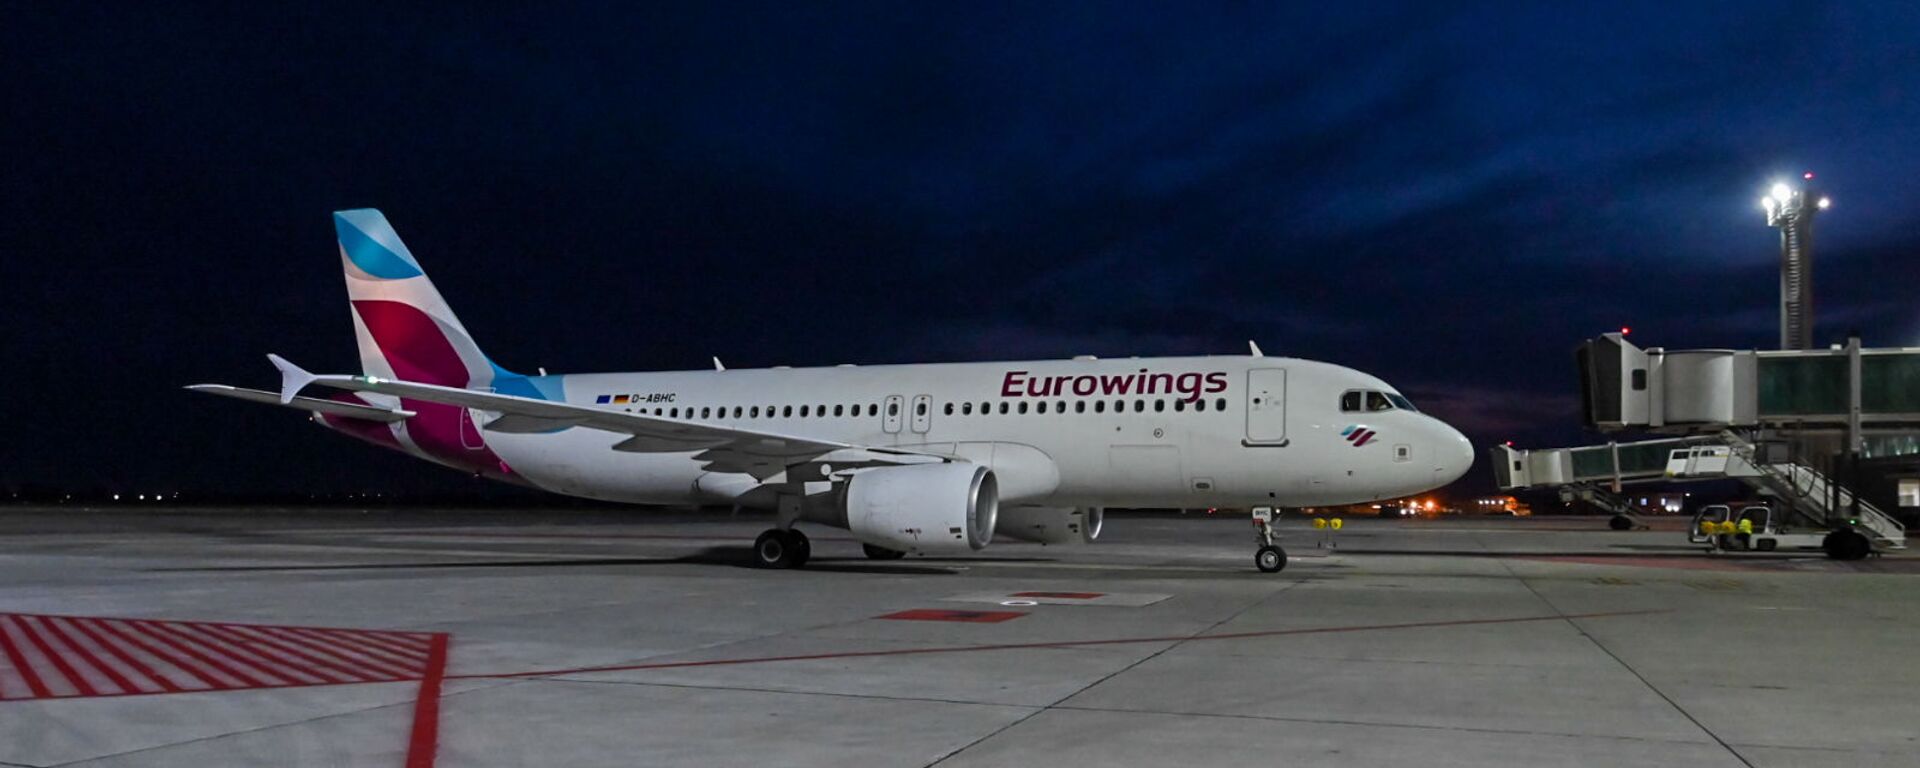 Лоукостер Eurowings запустил полеты из Кельна в Ереван - Sputnik Армения, 1920, 06.08.2021